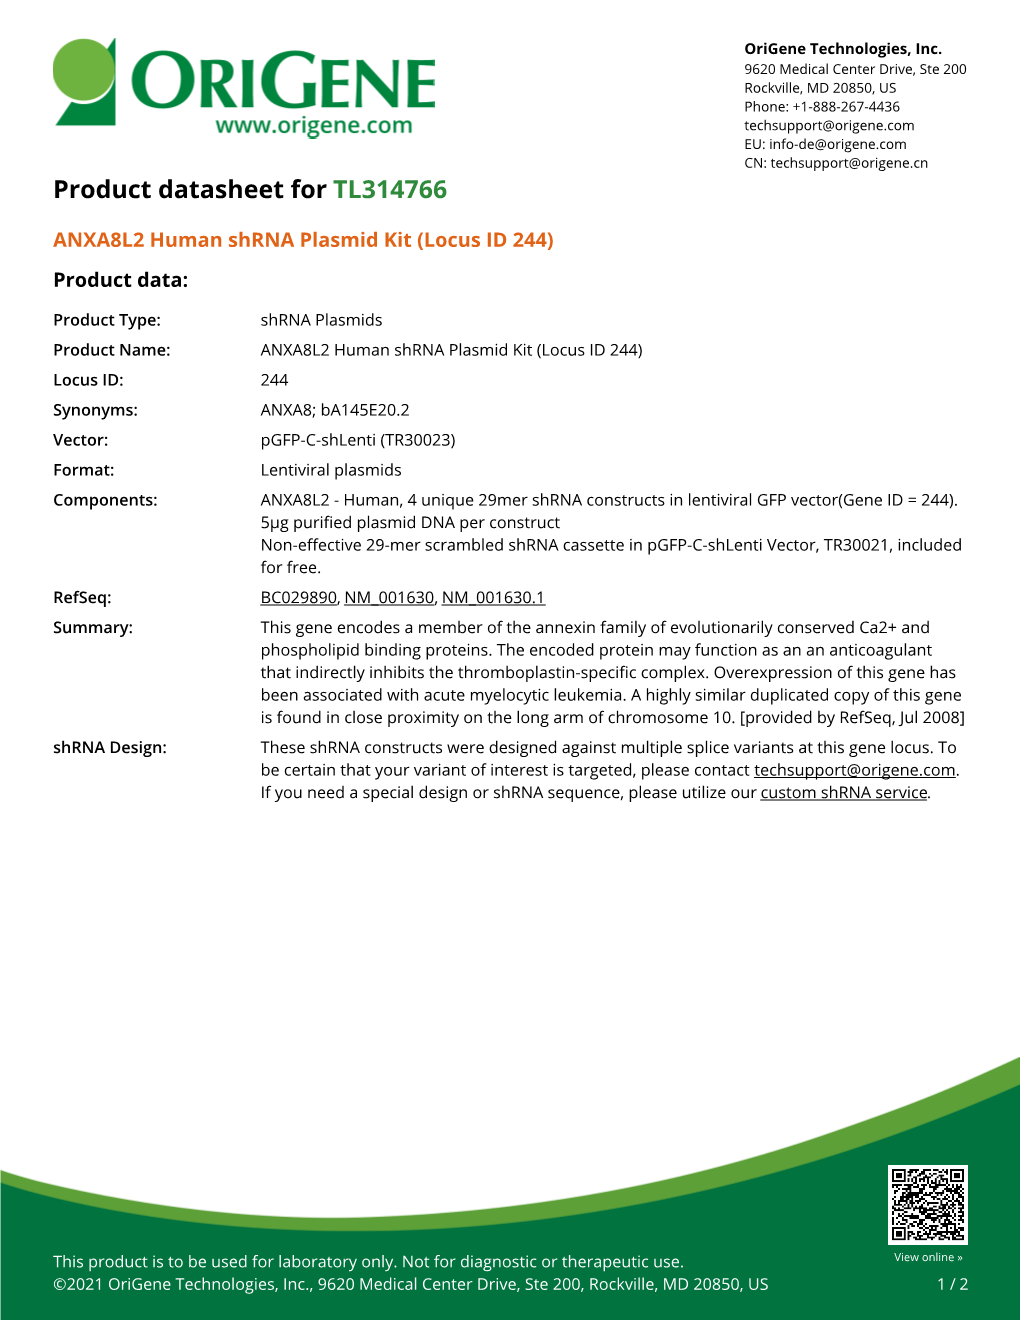 ANXA8L2 Human Shrna Plasmid Kit (Locus ID 244) Product Data